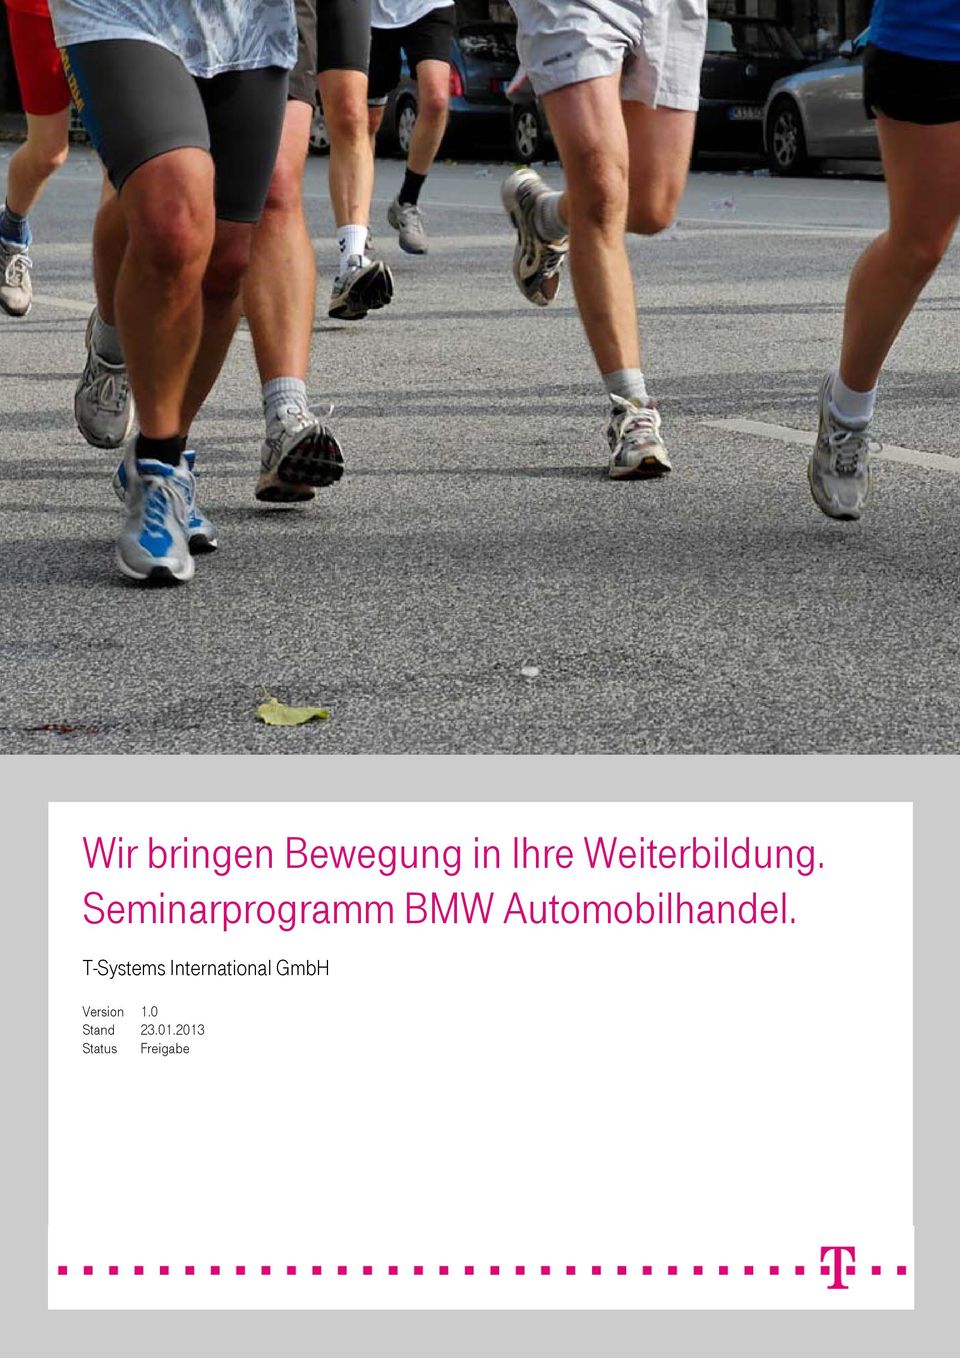 Seminarprogramm BMW Automobilhandel.